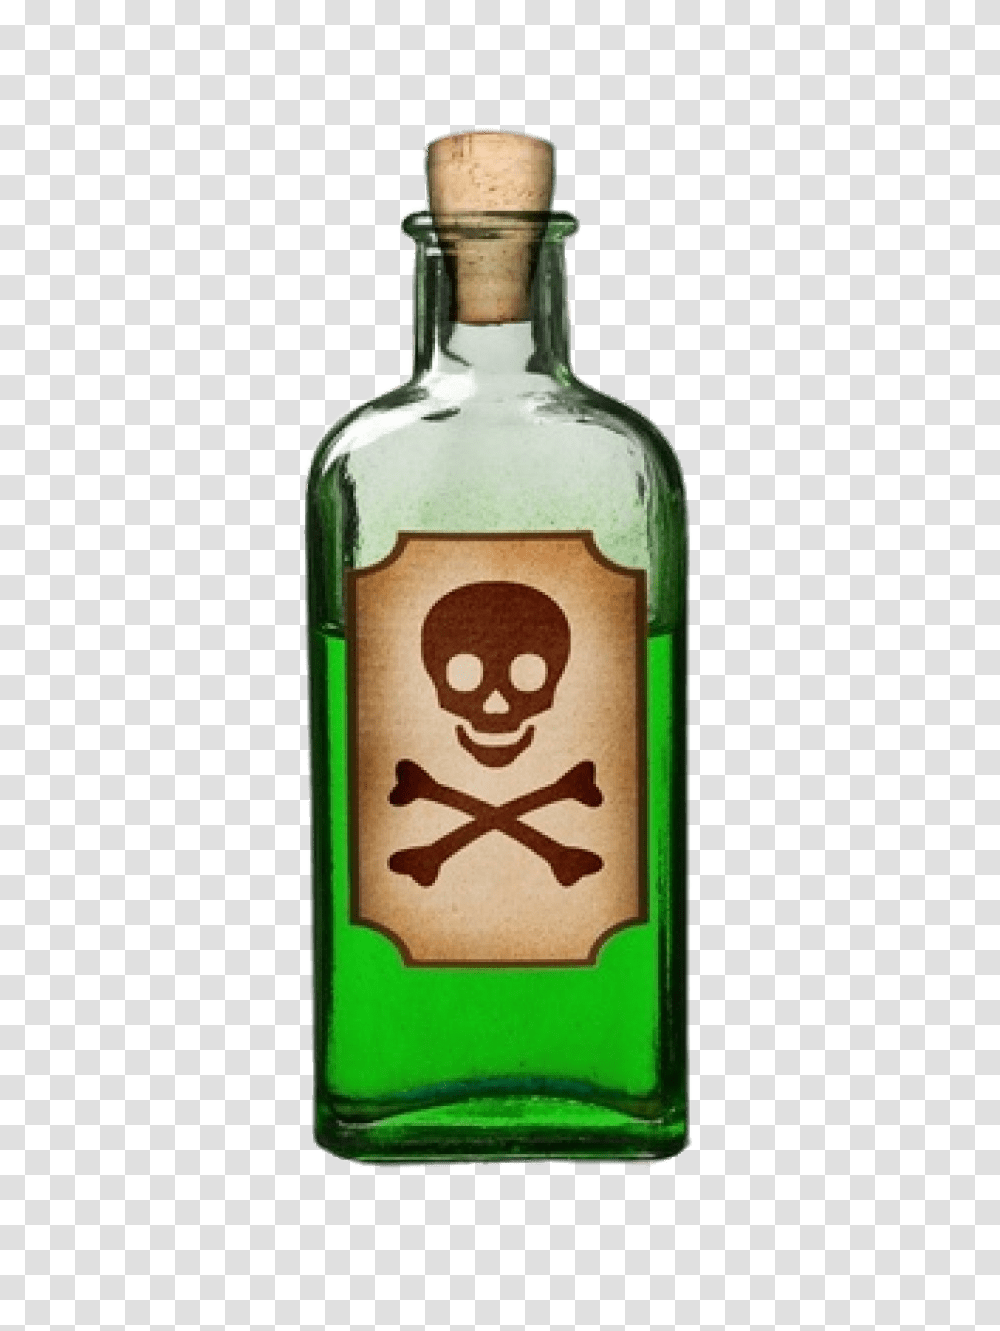 Bottle Of Green Poison, Liquor, Alcohol, Beverage, Drink Transparent Png